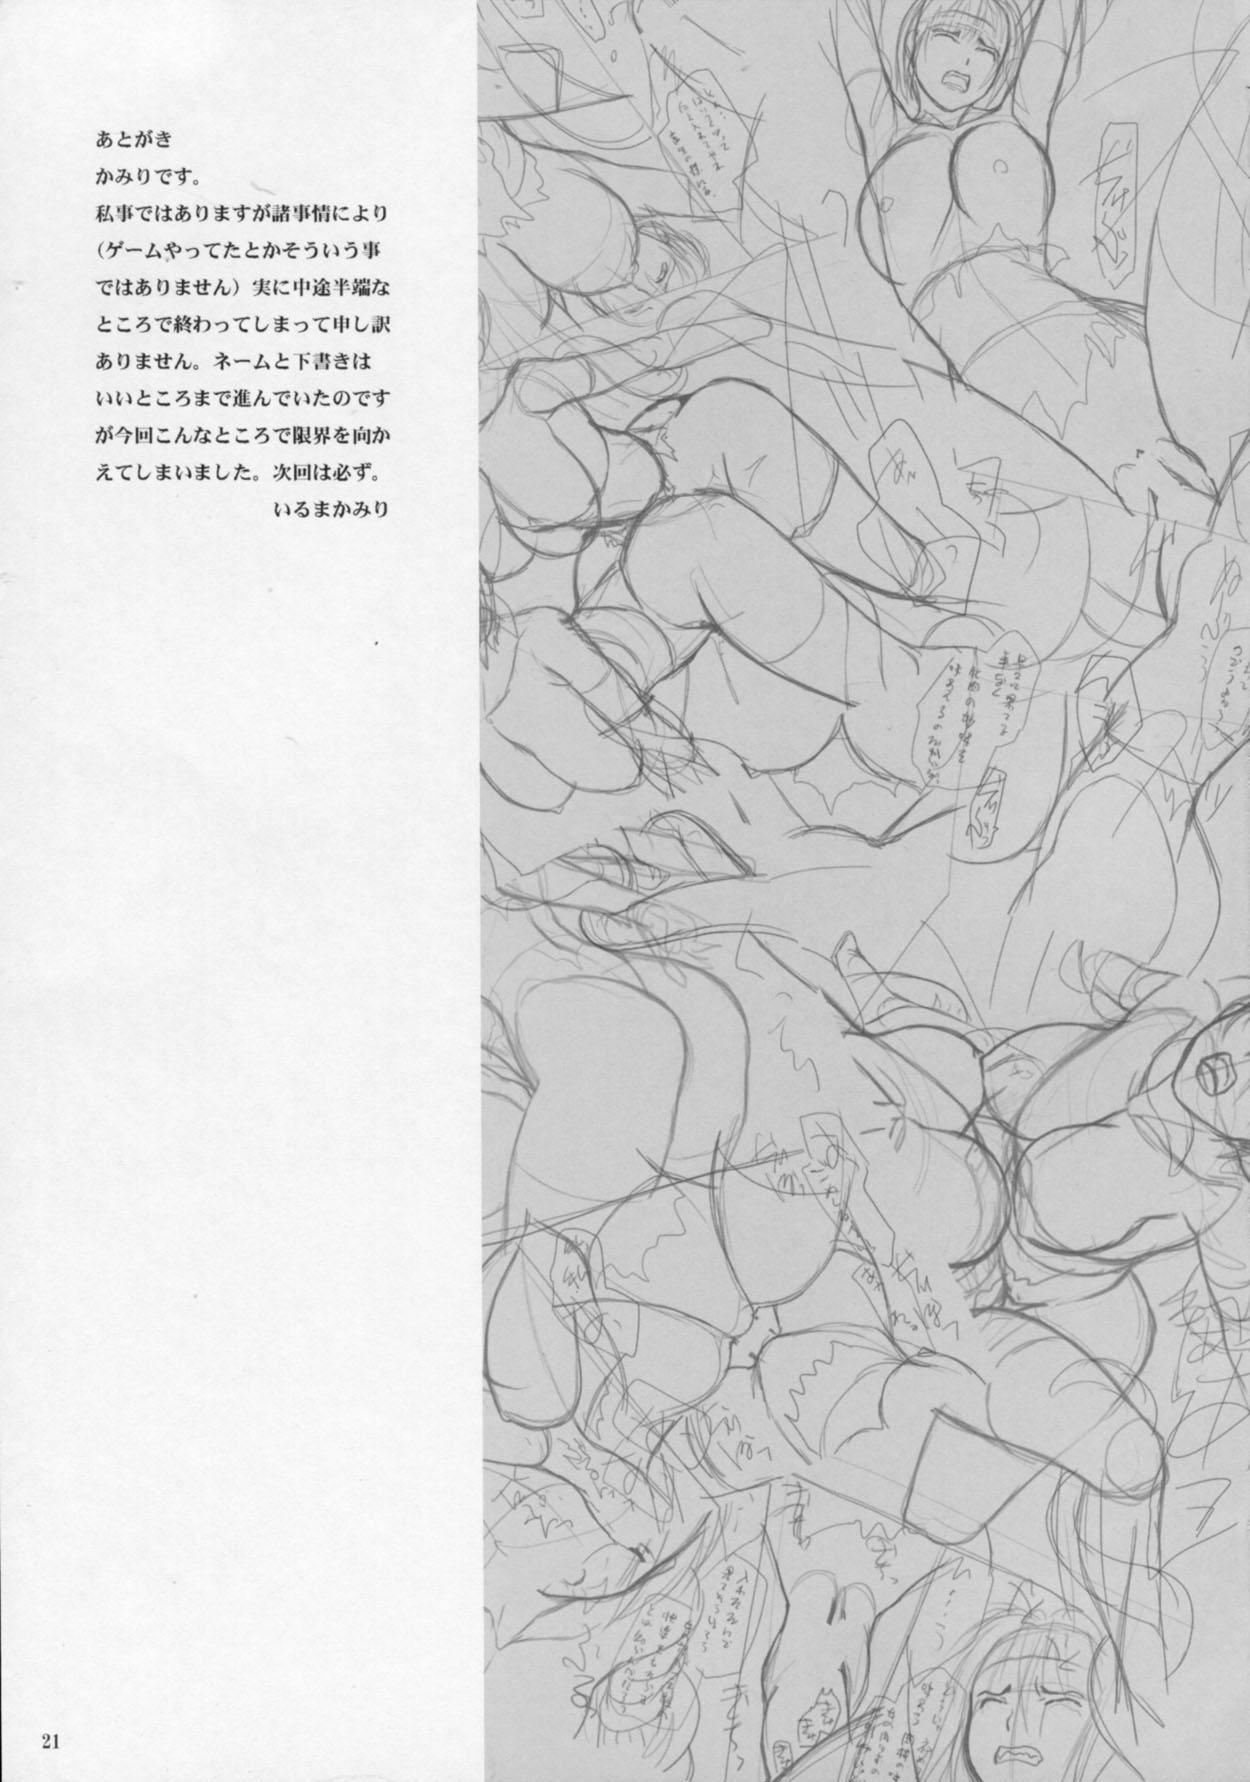 Toukiden Vol. 4 19